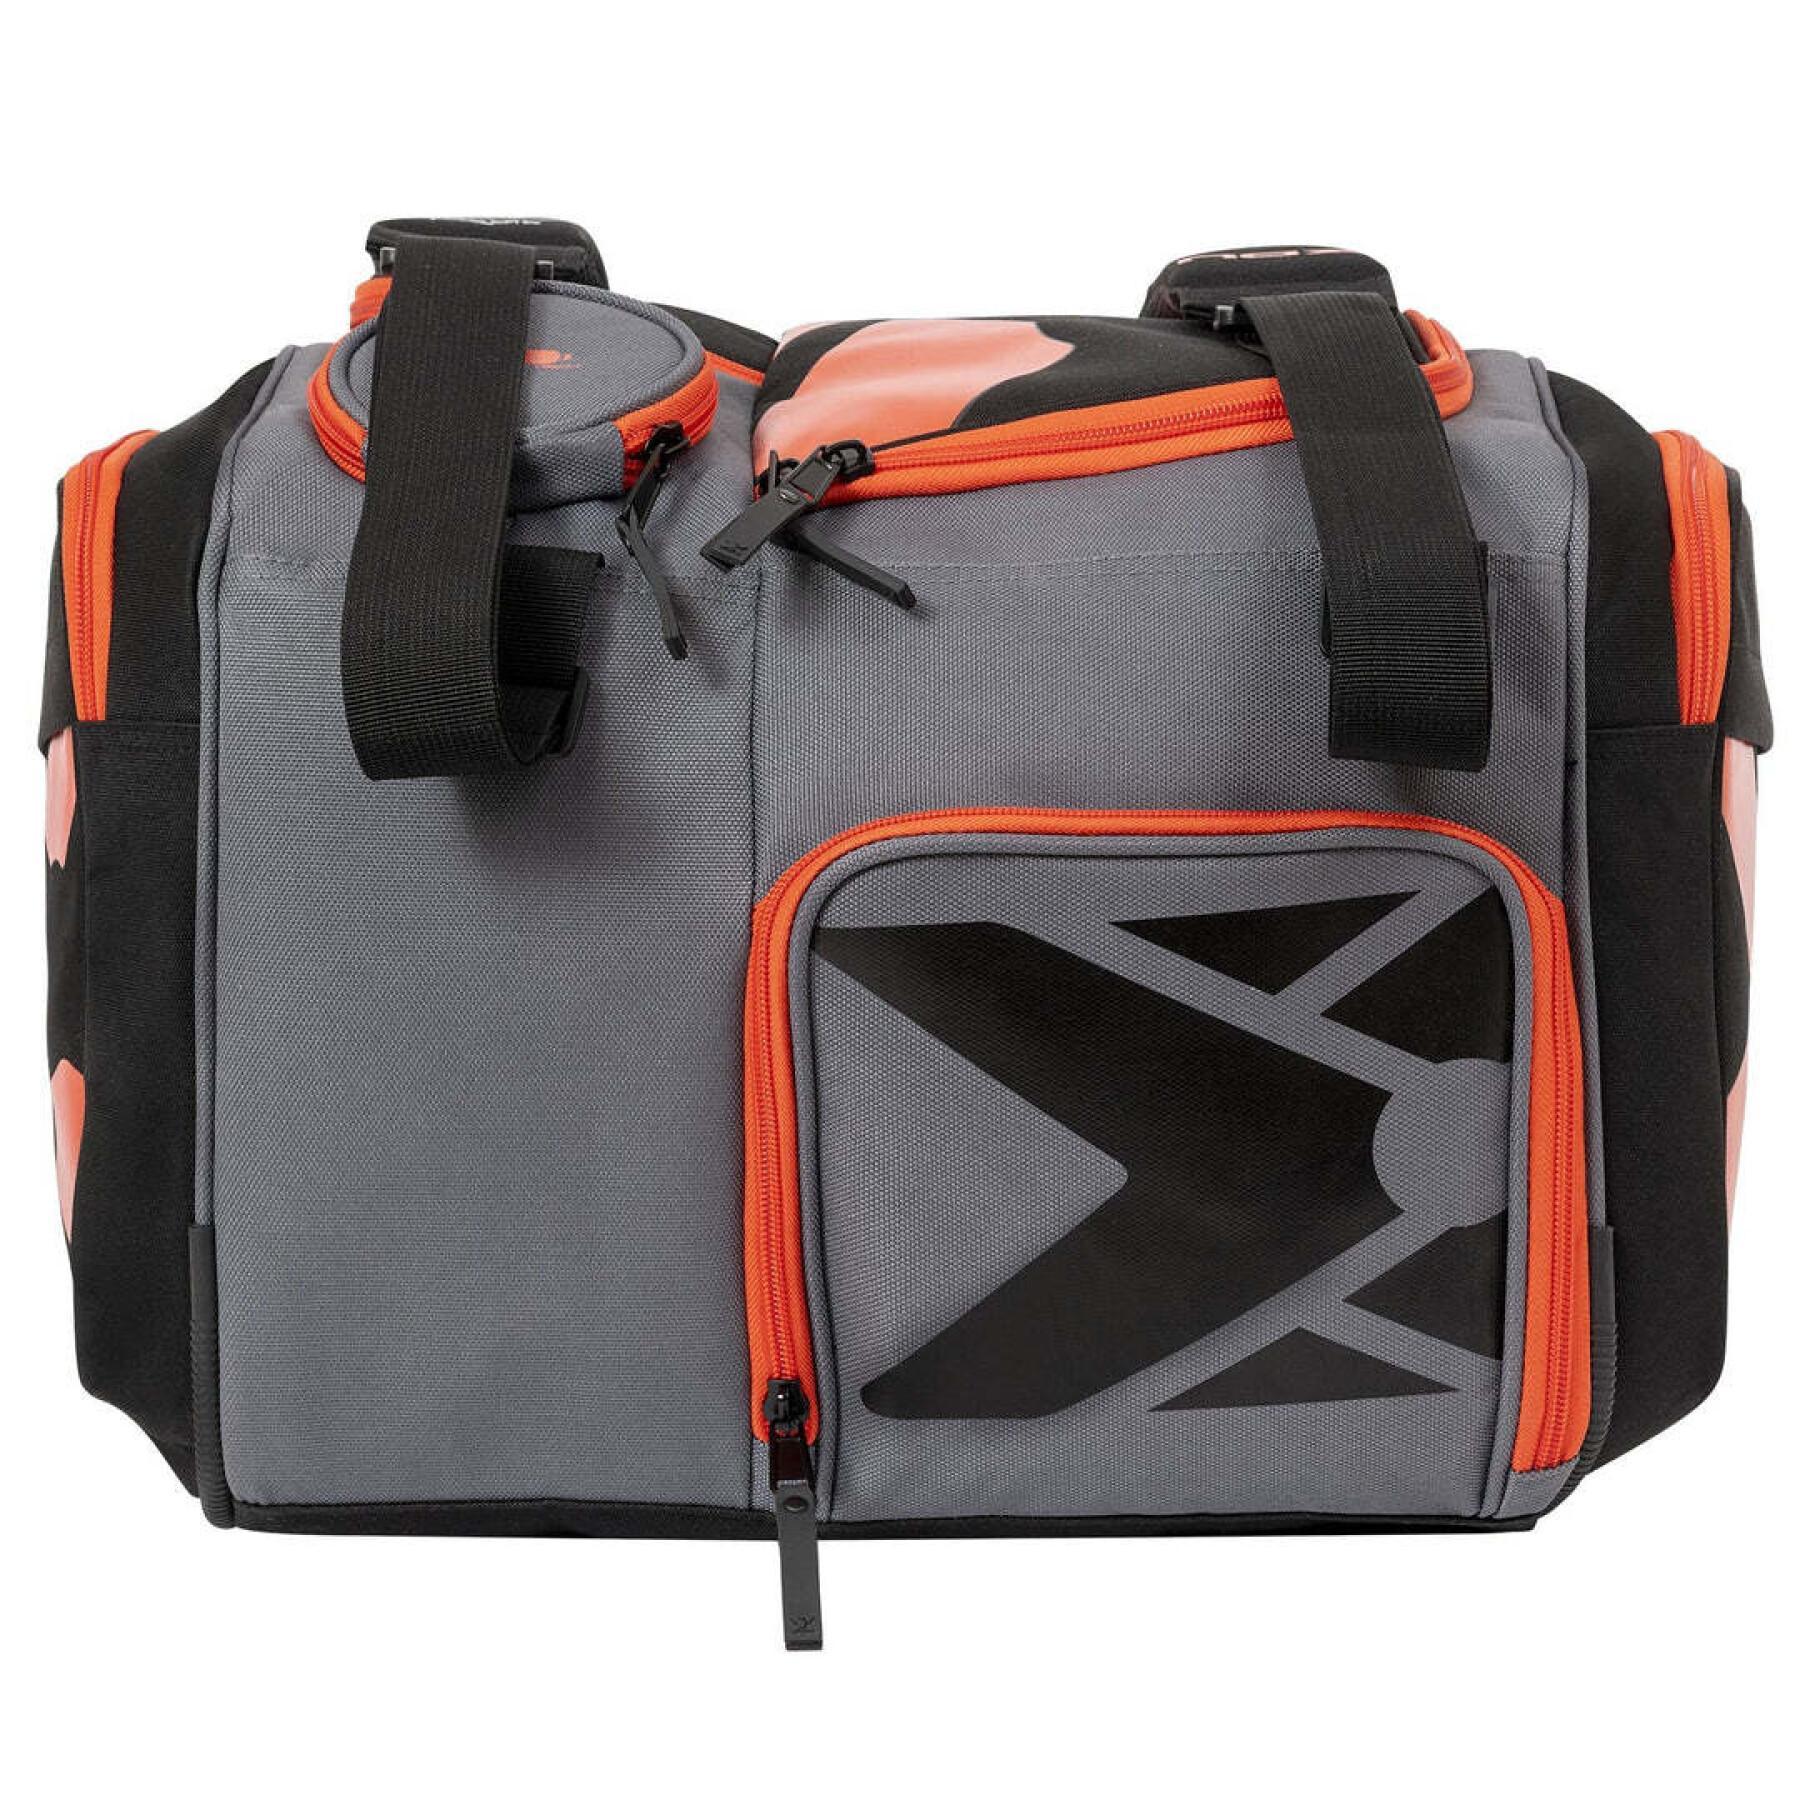 Schlägertasche von padel Nox AT10 Competition XL